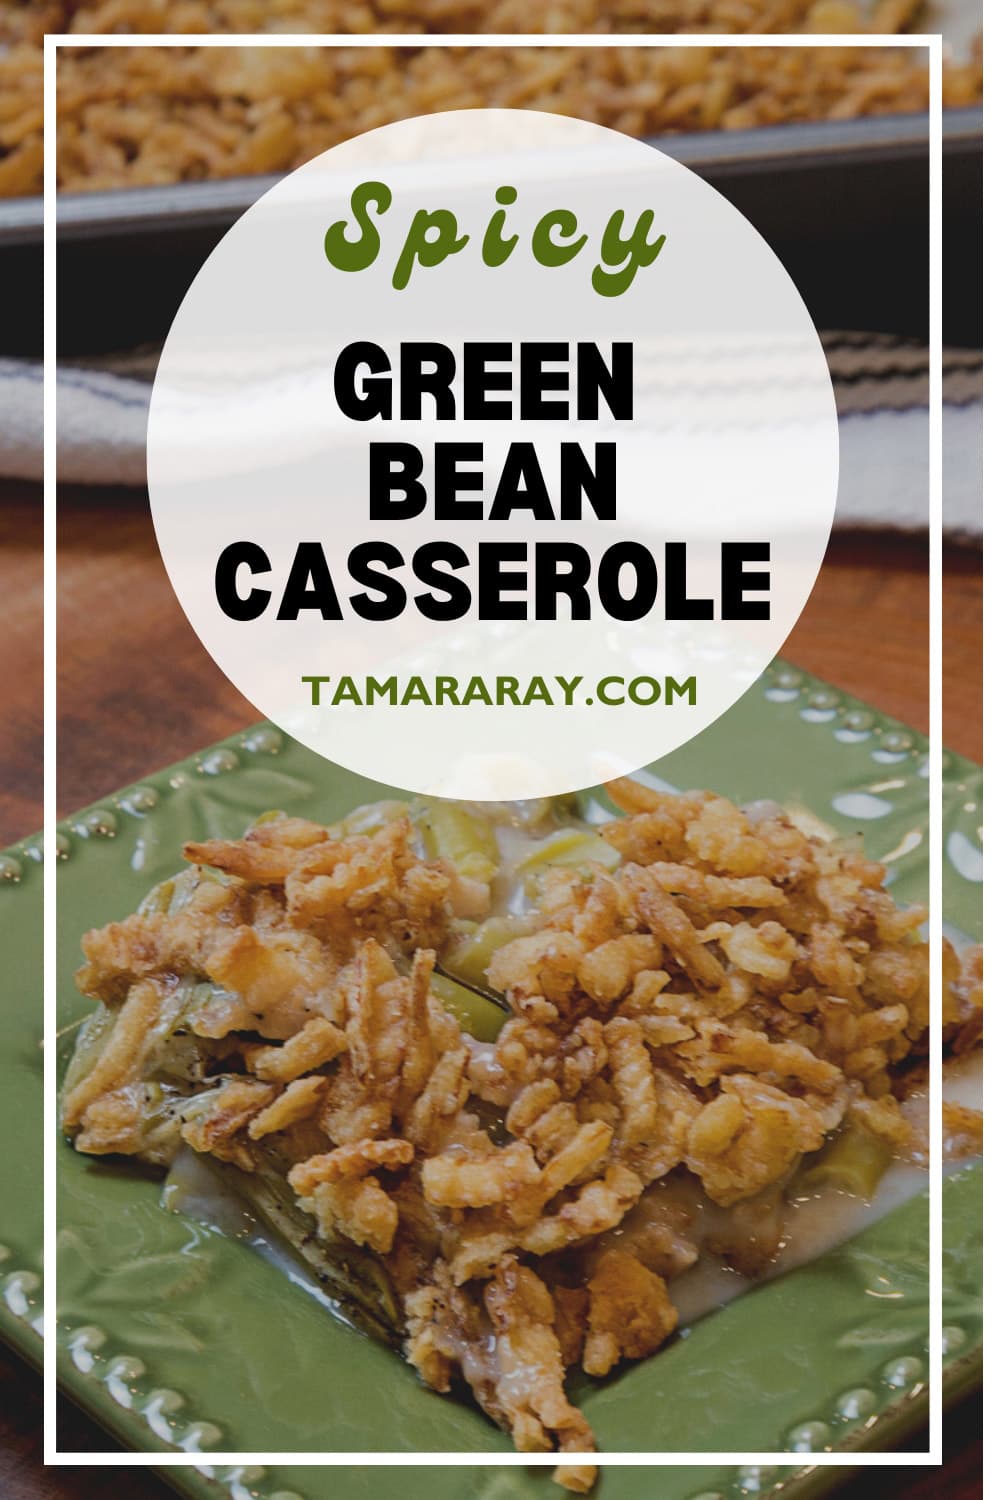 Spicy green bean casserole for Pinterest.